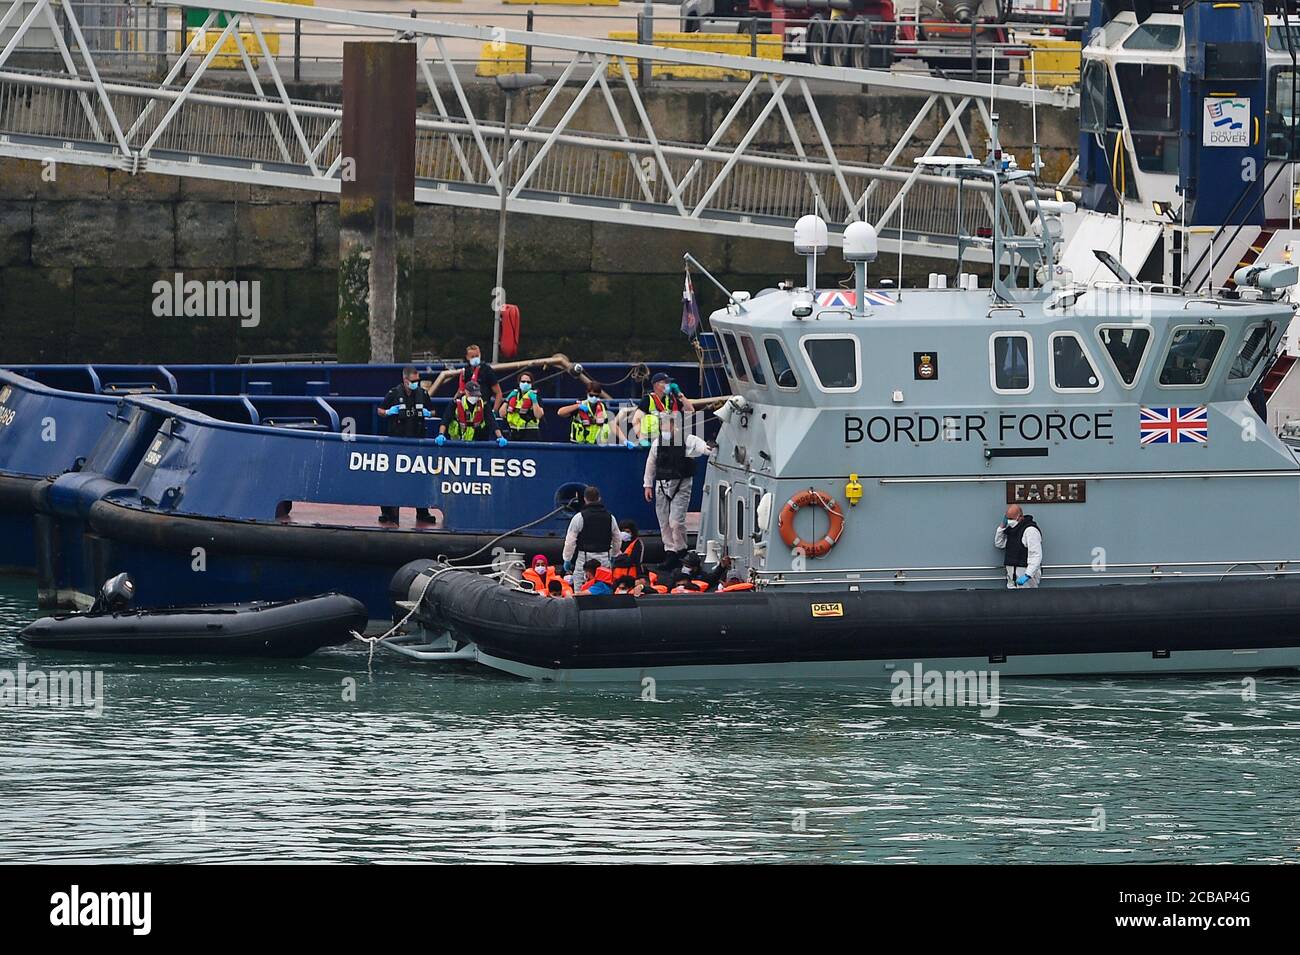 Un gruppo di persone che si pensa siano migranti è portato a dover, Kent, dagli ufficiali della Border Force a seguito di una serie di piccoli incidenti in barca nella Manica oggi. Foto Stock